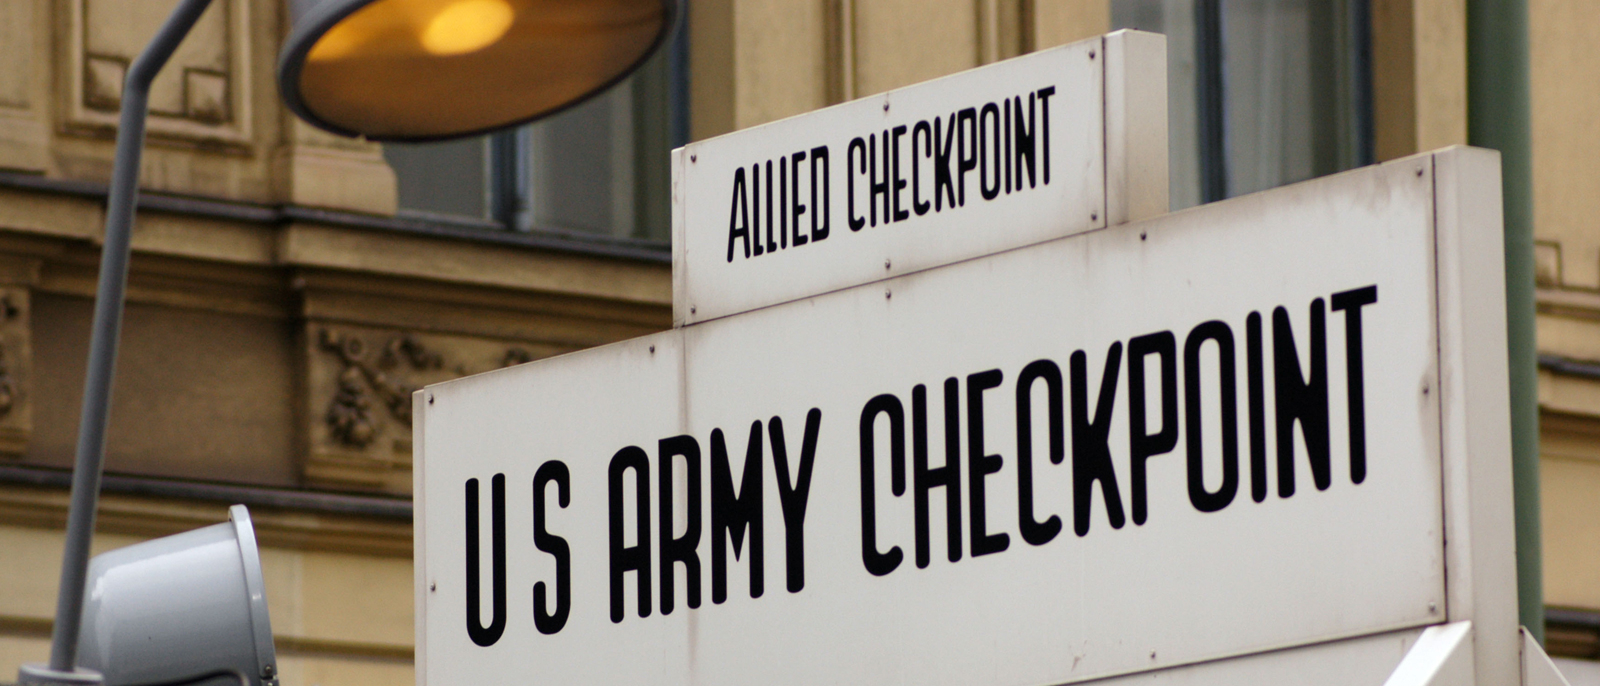 Der Schriftzug "Allied Checkpoint - US Army Checkpoint" auf dem rekonstruierten Kontrollhäuschen.